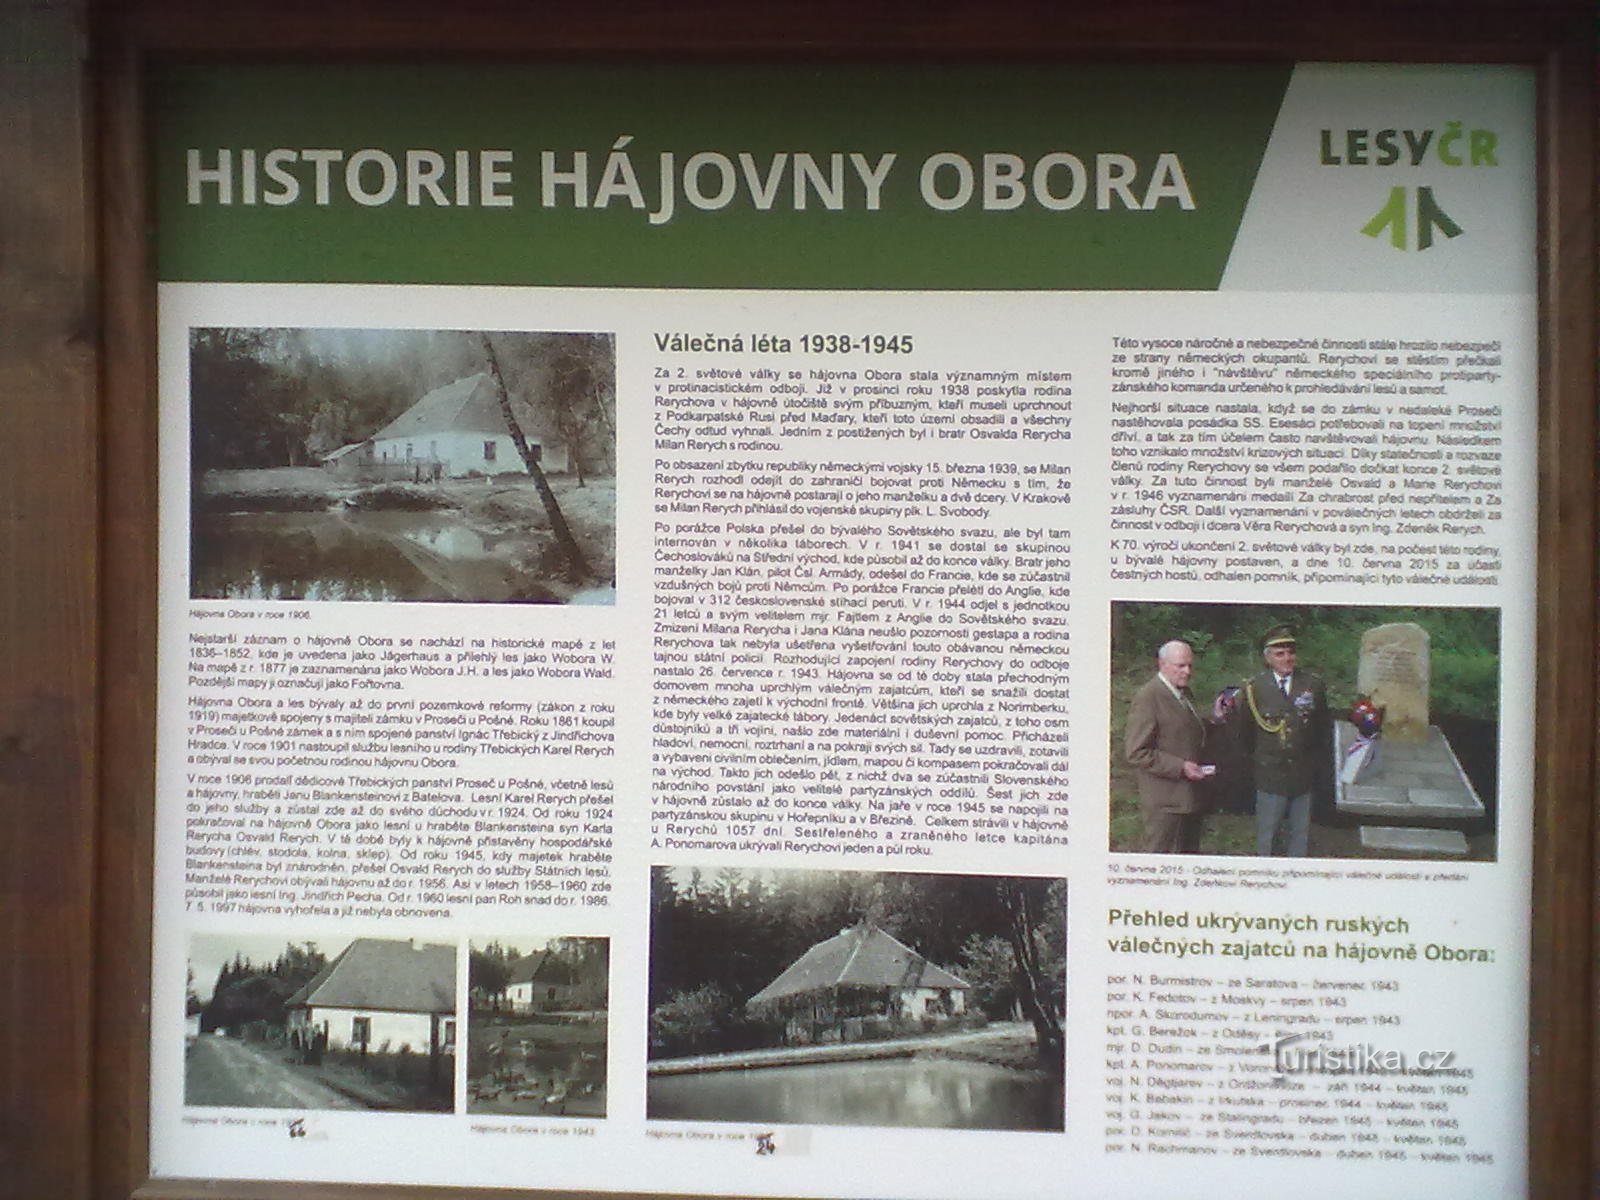 0. Det tidigare gömstället Rerychov - under kriget gömde familjen förrymda fångar från koncentrationsläger.